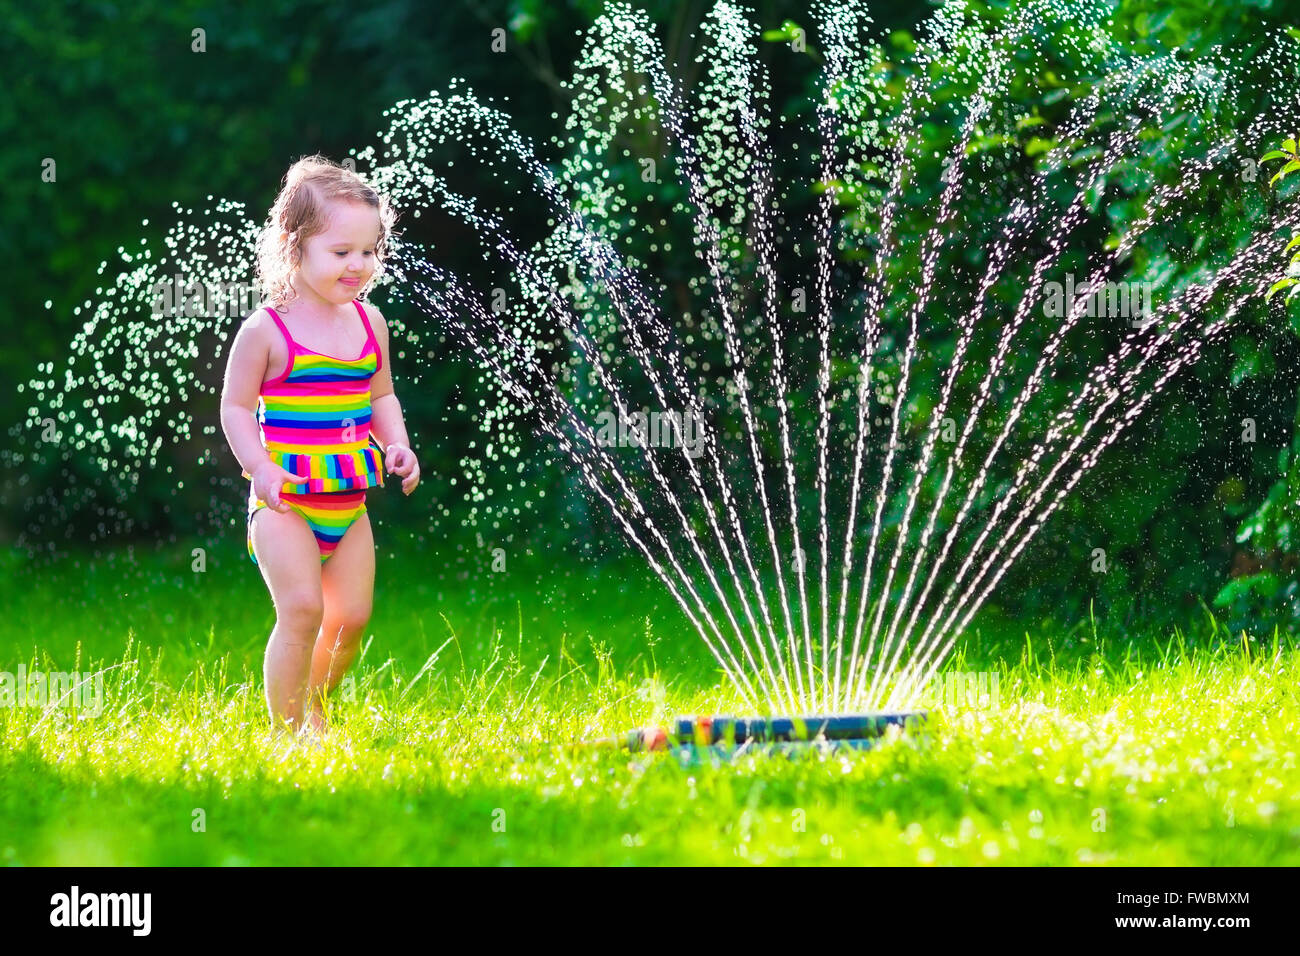 kids garden sprinkler